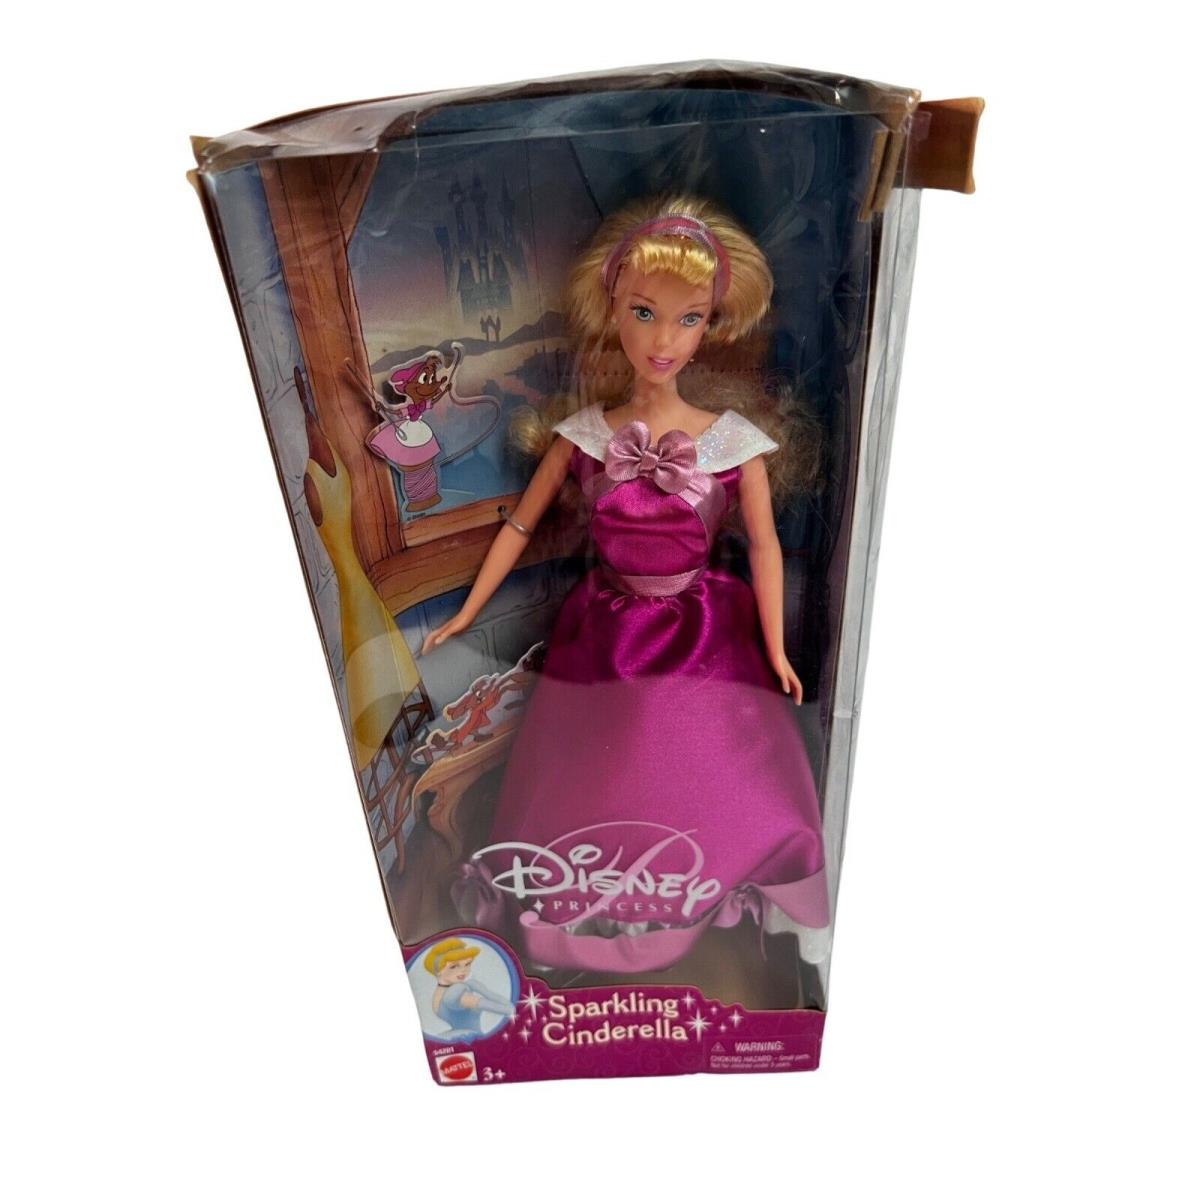 Vintage Disney Princess Barbie Doll Sparkling Cinderella Pink Dress 2001